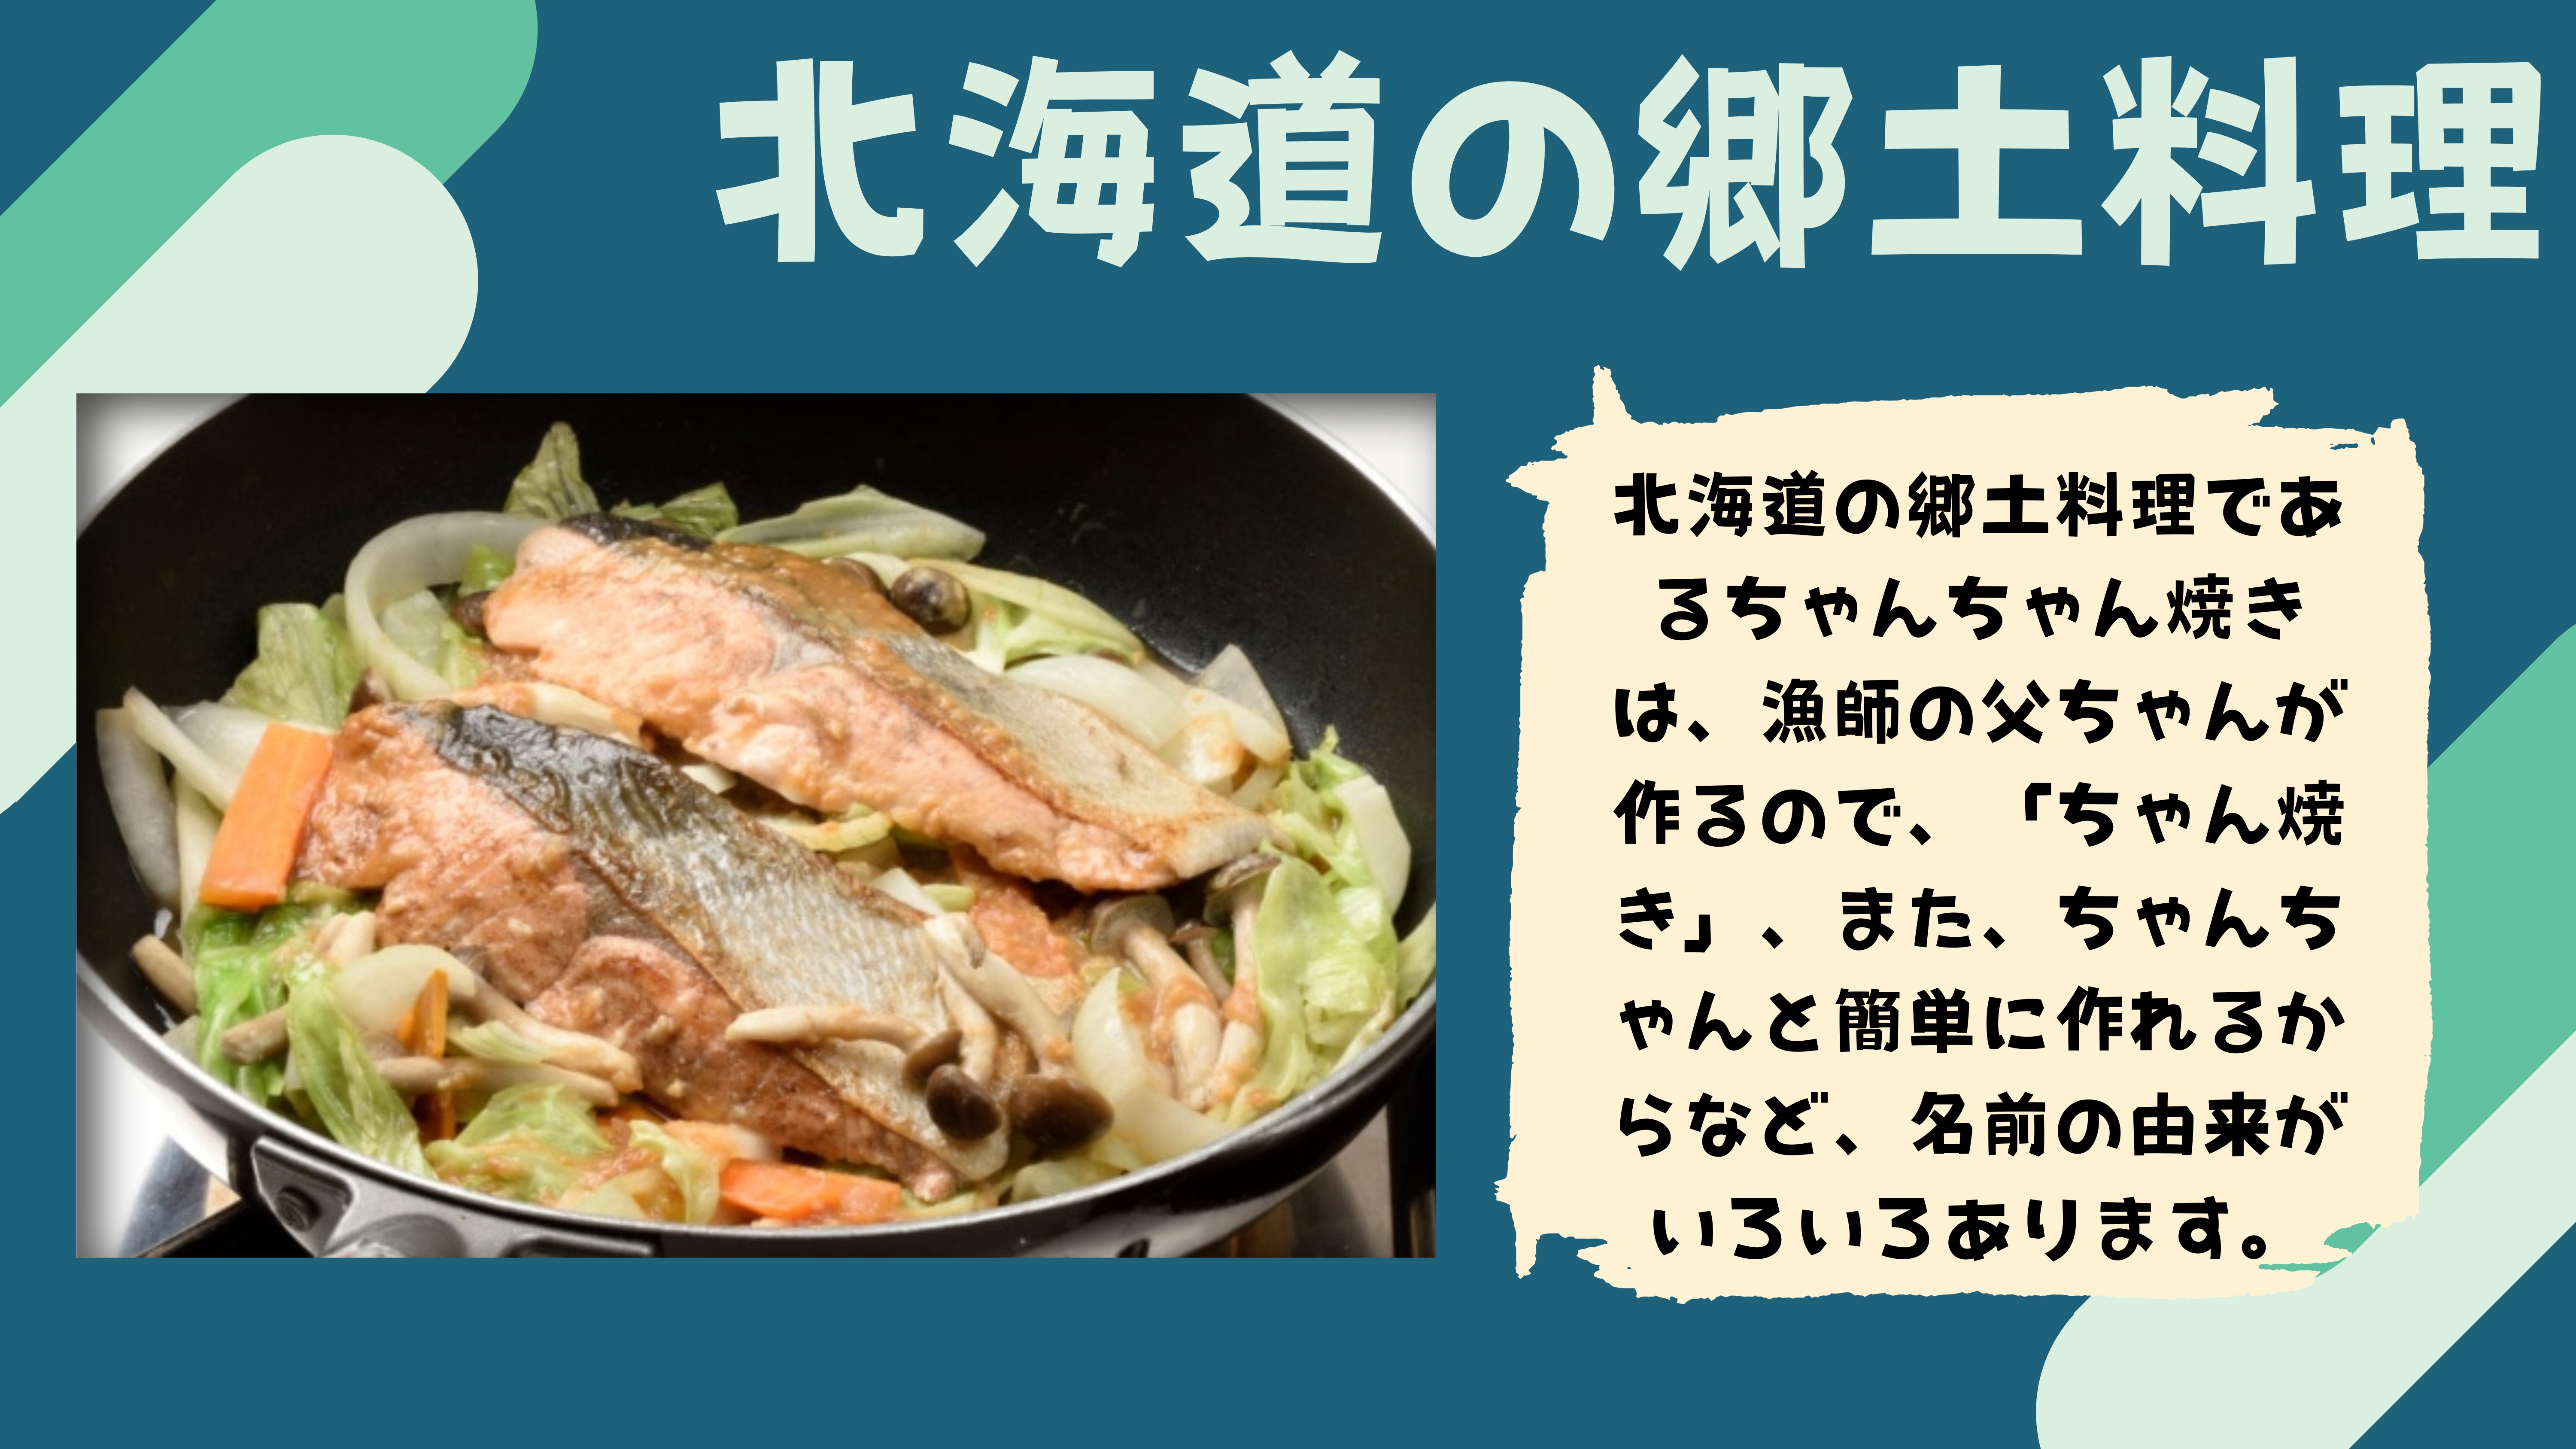 北海道の郷土料理：北海道の郷土料理であるちゃんちゃん焼きは、漁師の父ちゃんが作るので、「ちゃん焼き」、また、ちゃんちゃんと簡単に作れるからなど、名前の由来がいろいろあります。